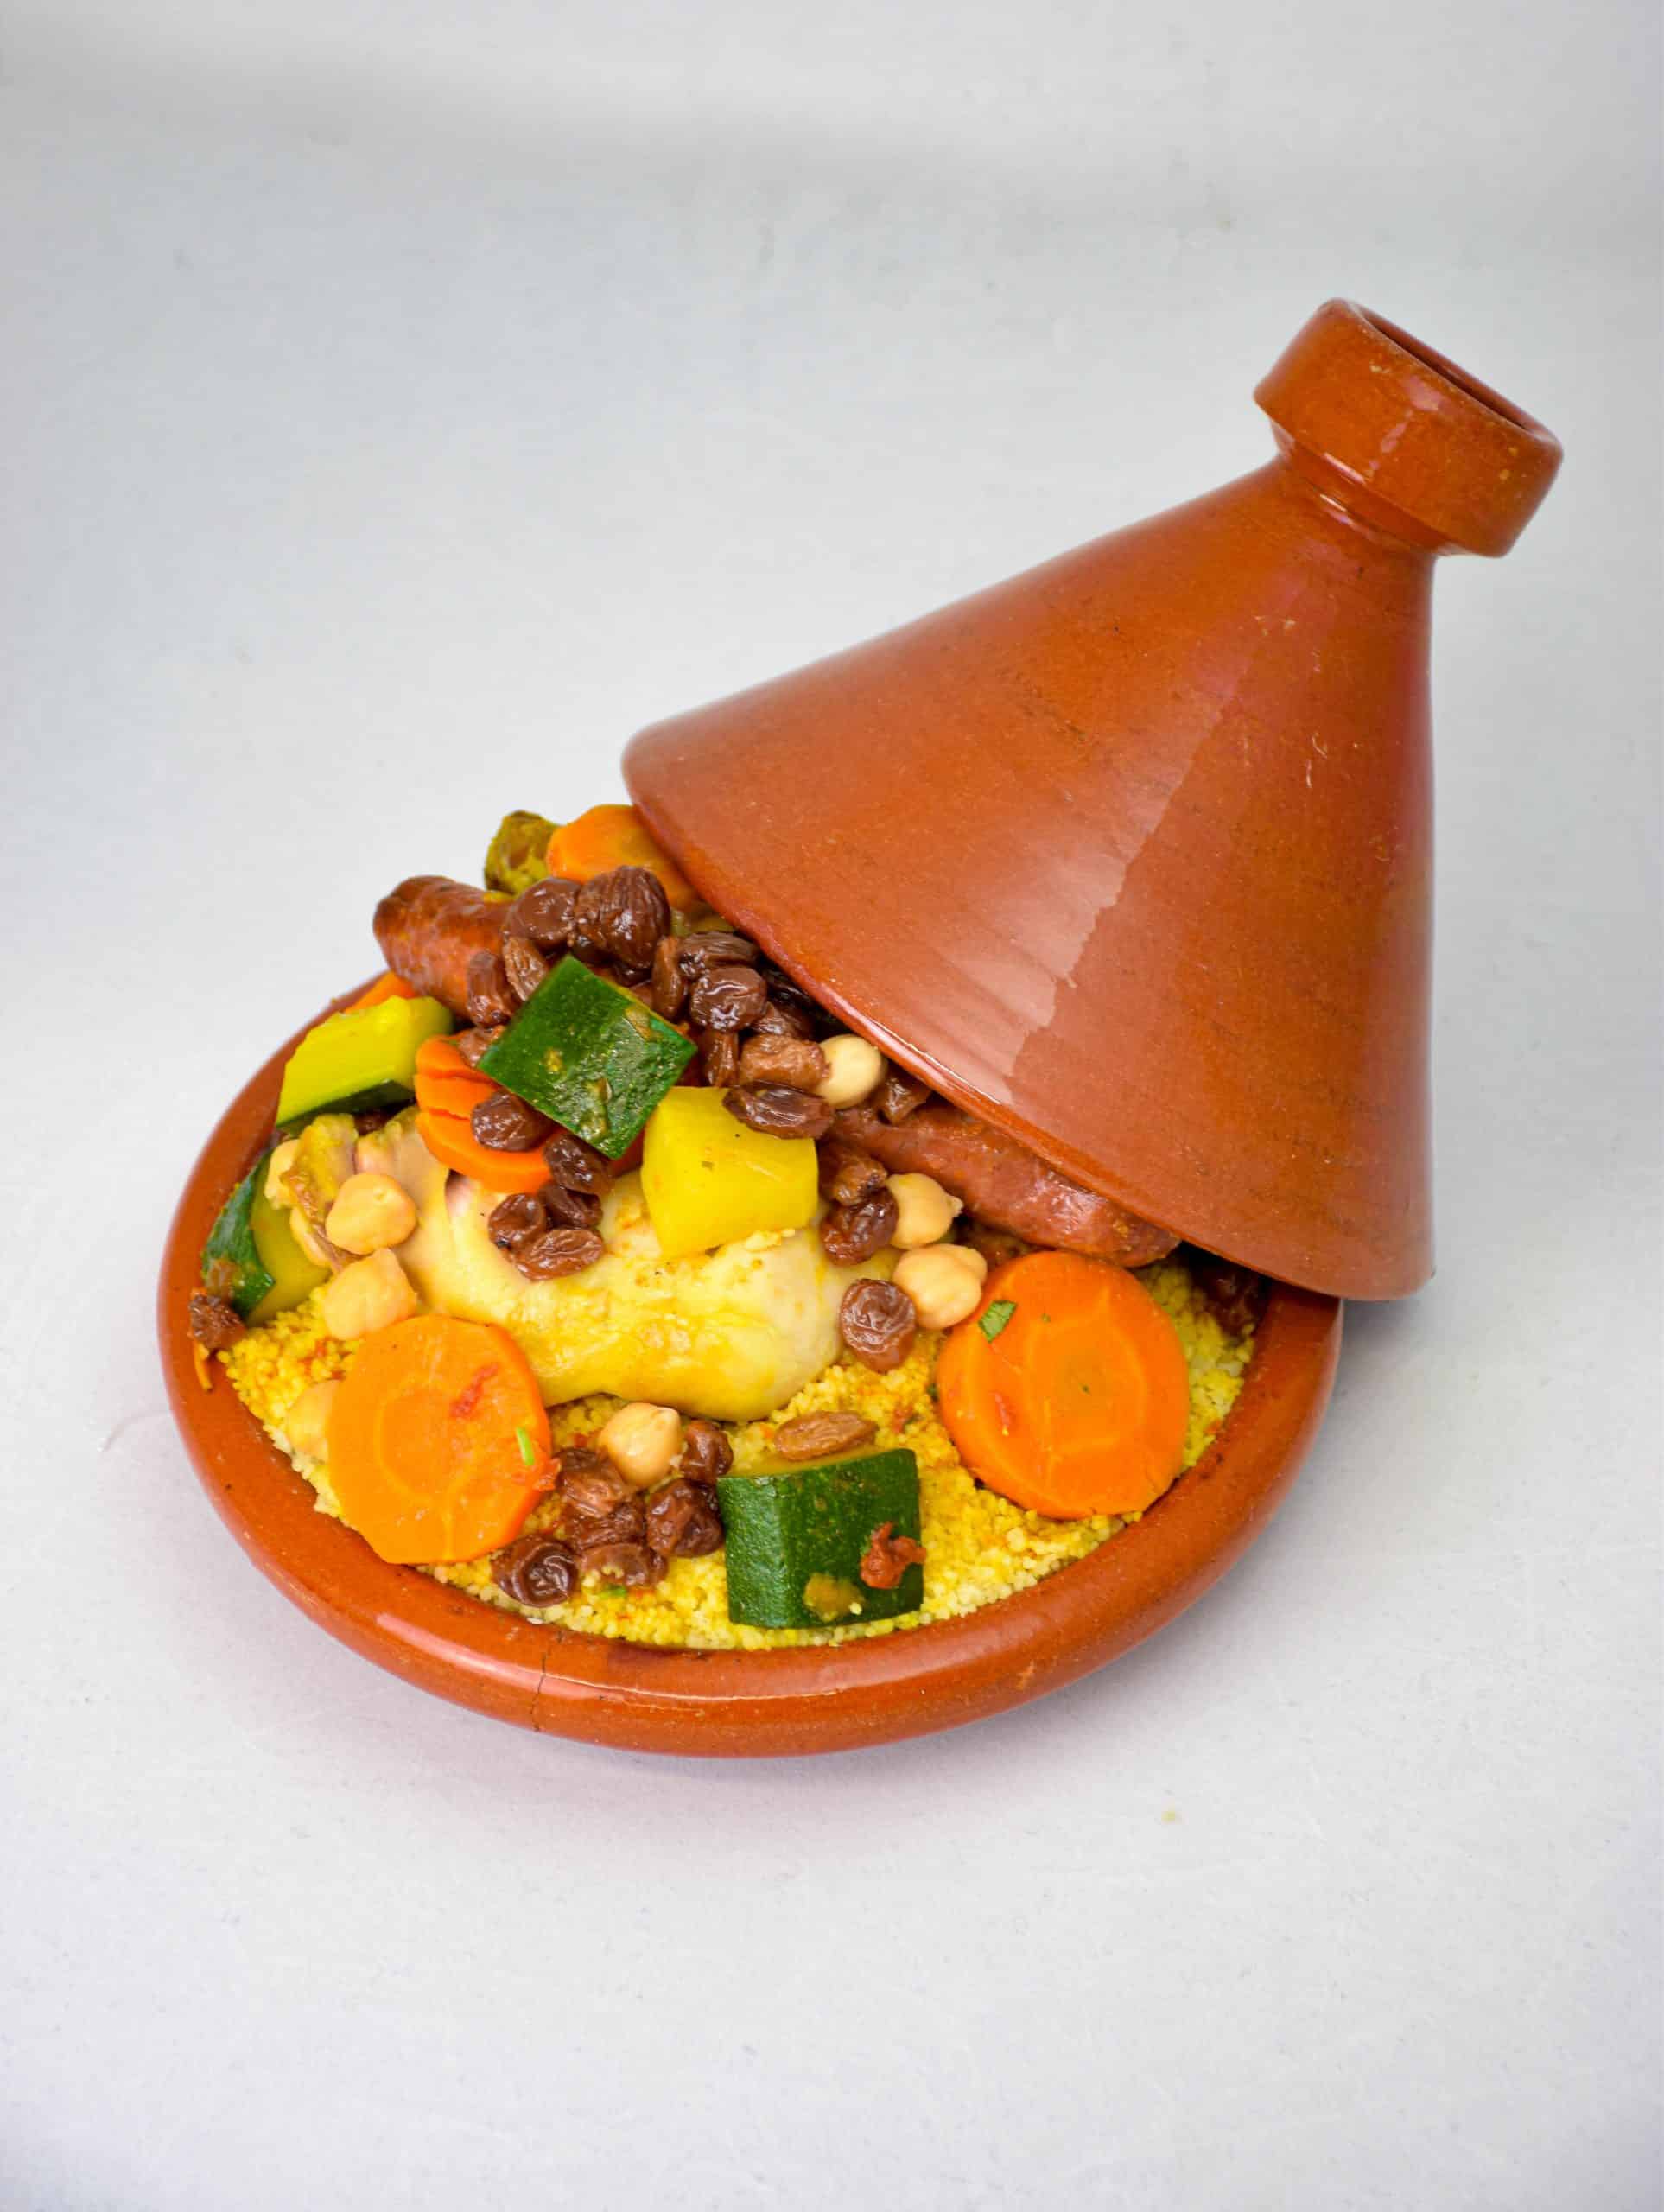 Couscous marocain traditionnel : une recette et histoire